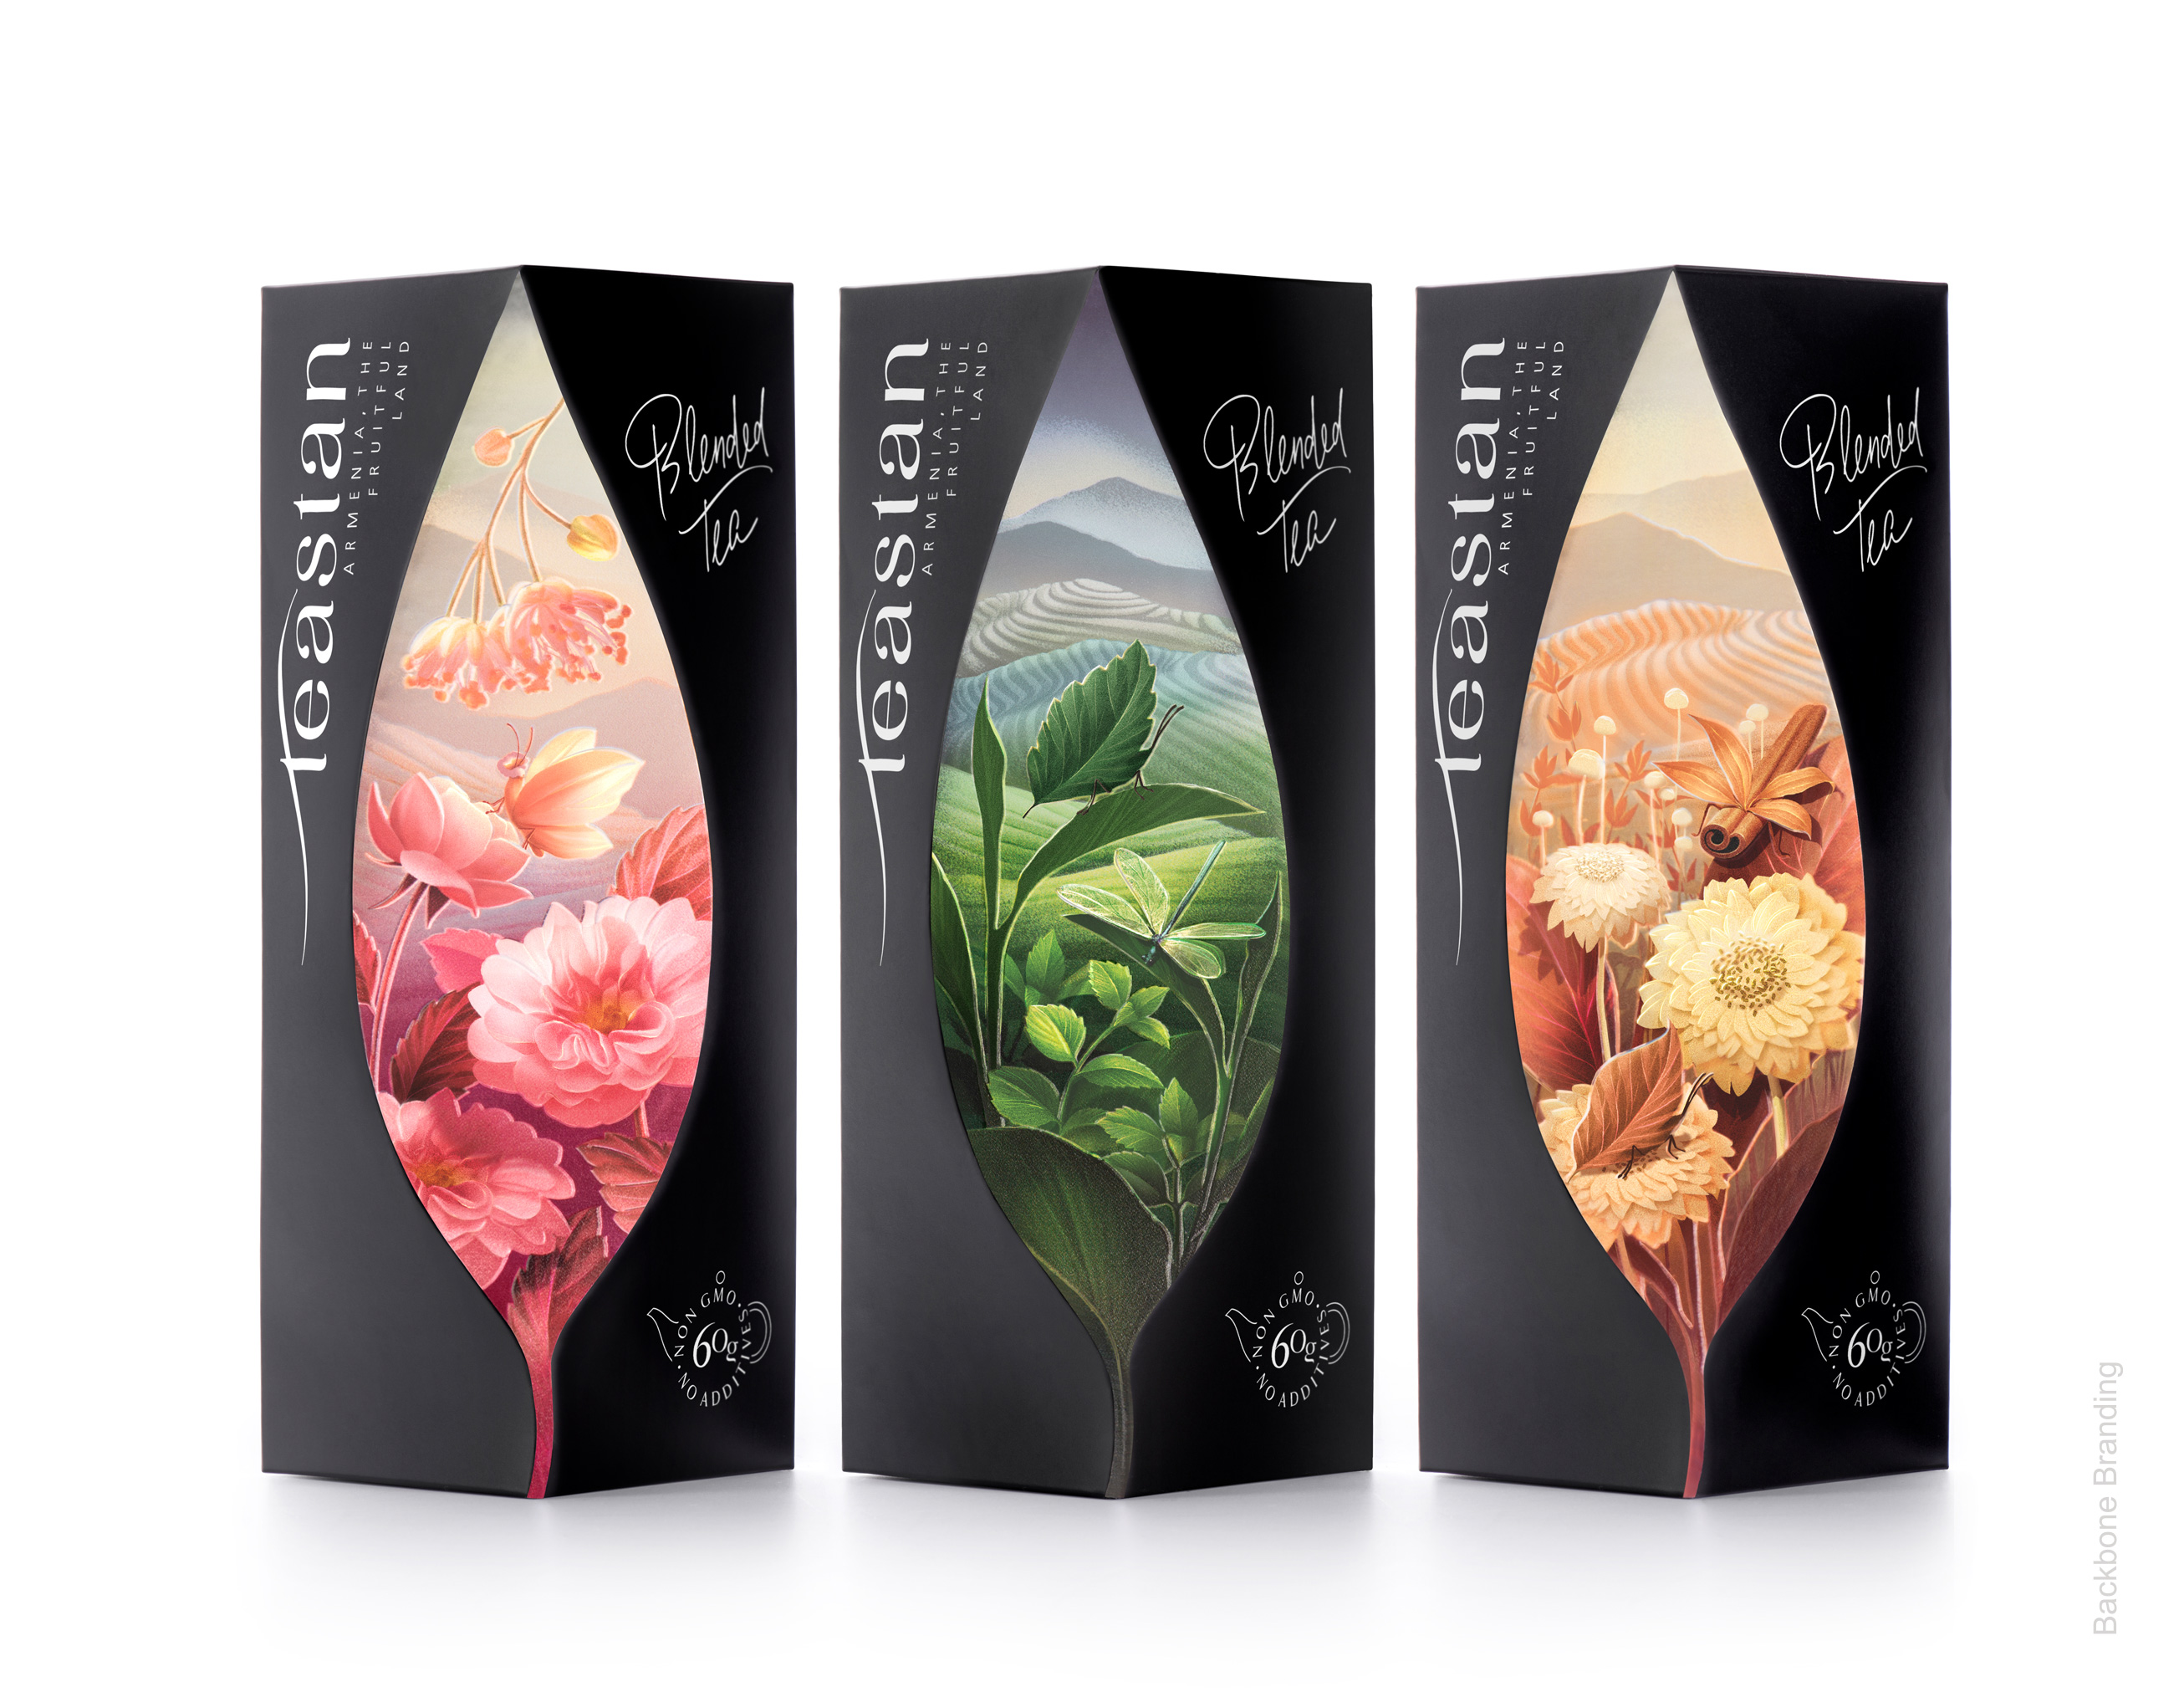 Backbone Branding Creates Packaging Design for Teastan Tea